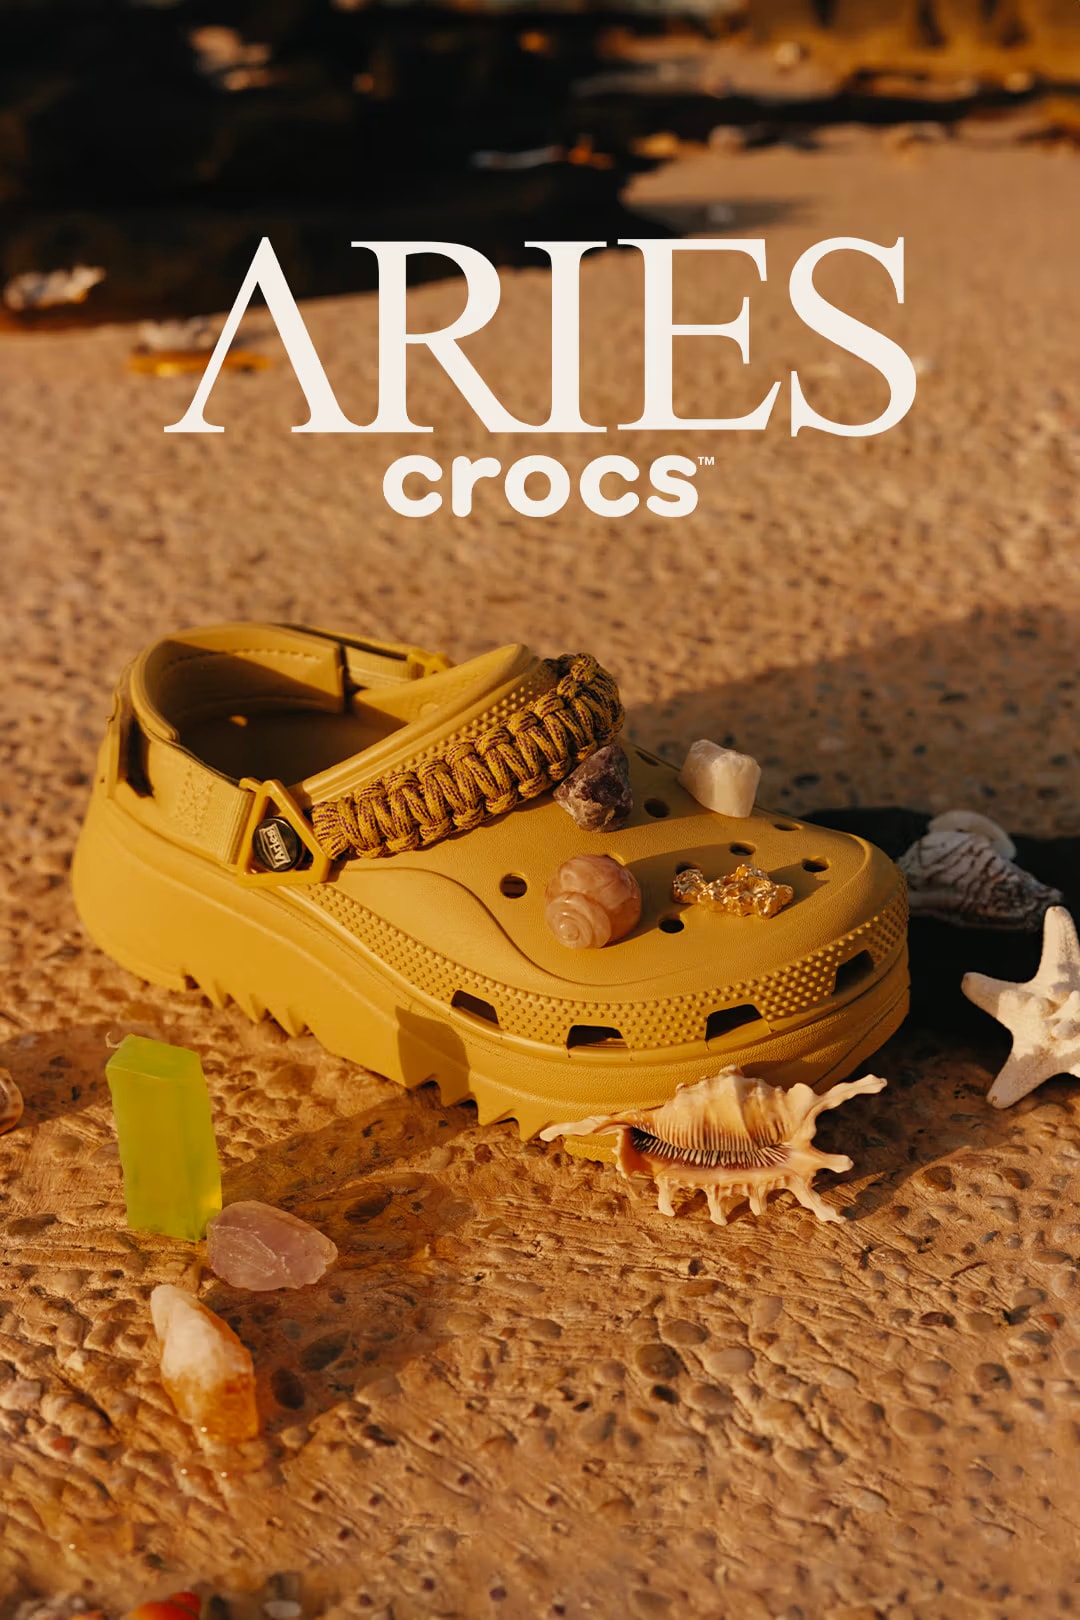 Crocs 首度攜手 Aries 打造最新聯名鞋款